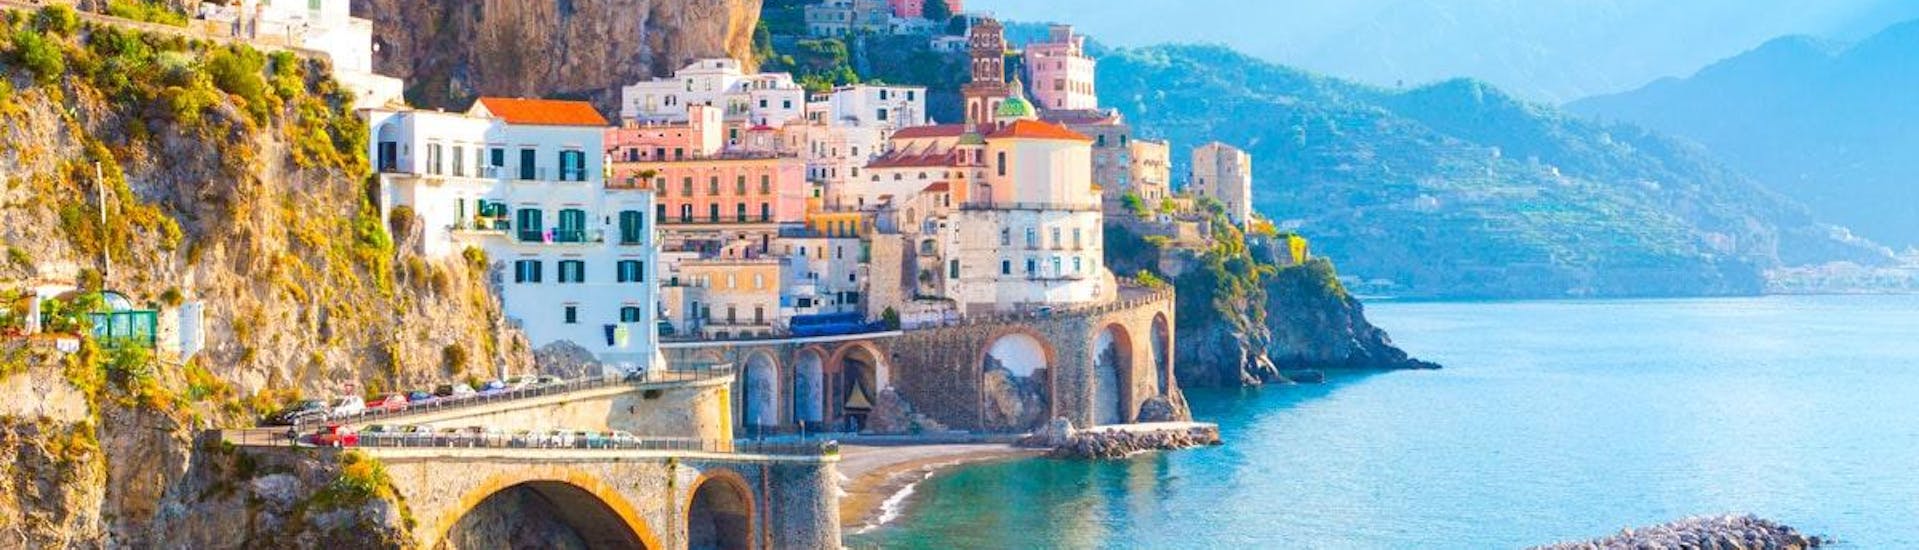 Le case colorate di Amalfi possono essere viste in barca durante una gita in barca da Torre del Greco a Positano e Amalfi con You Know! Boat Sorrento.